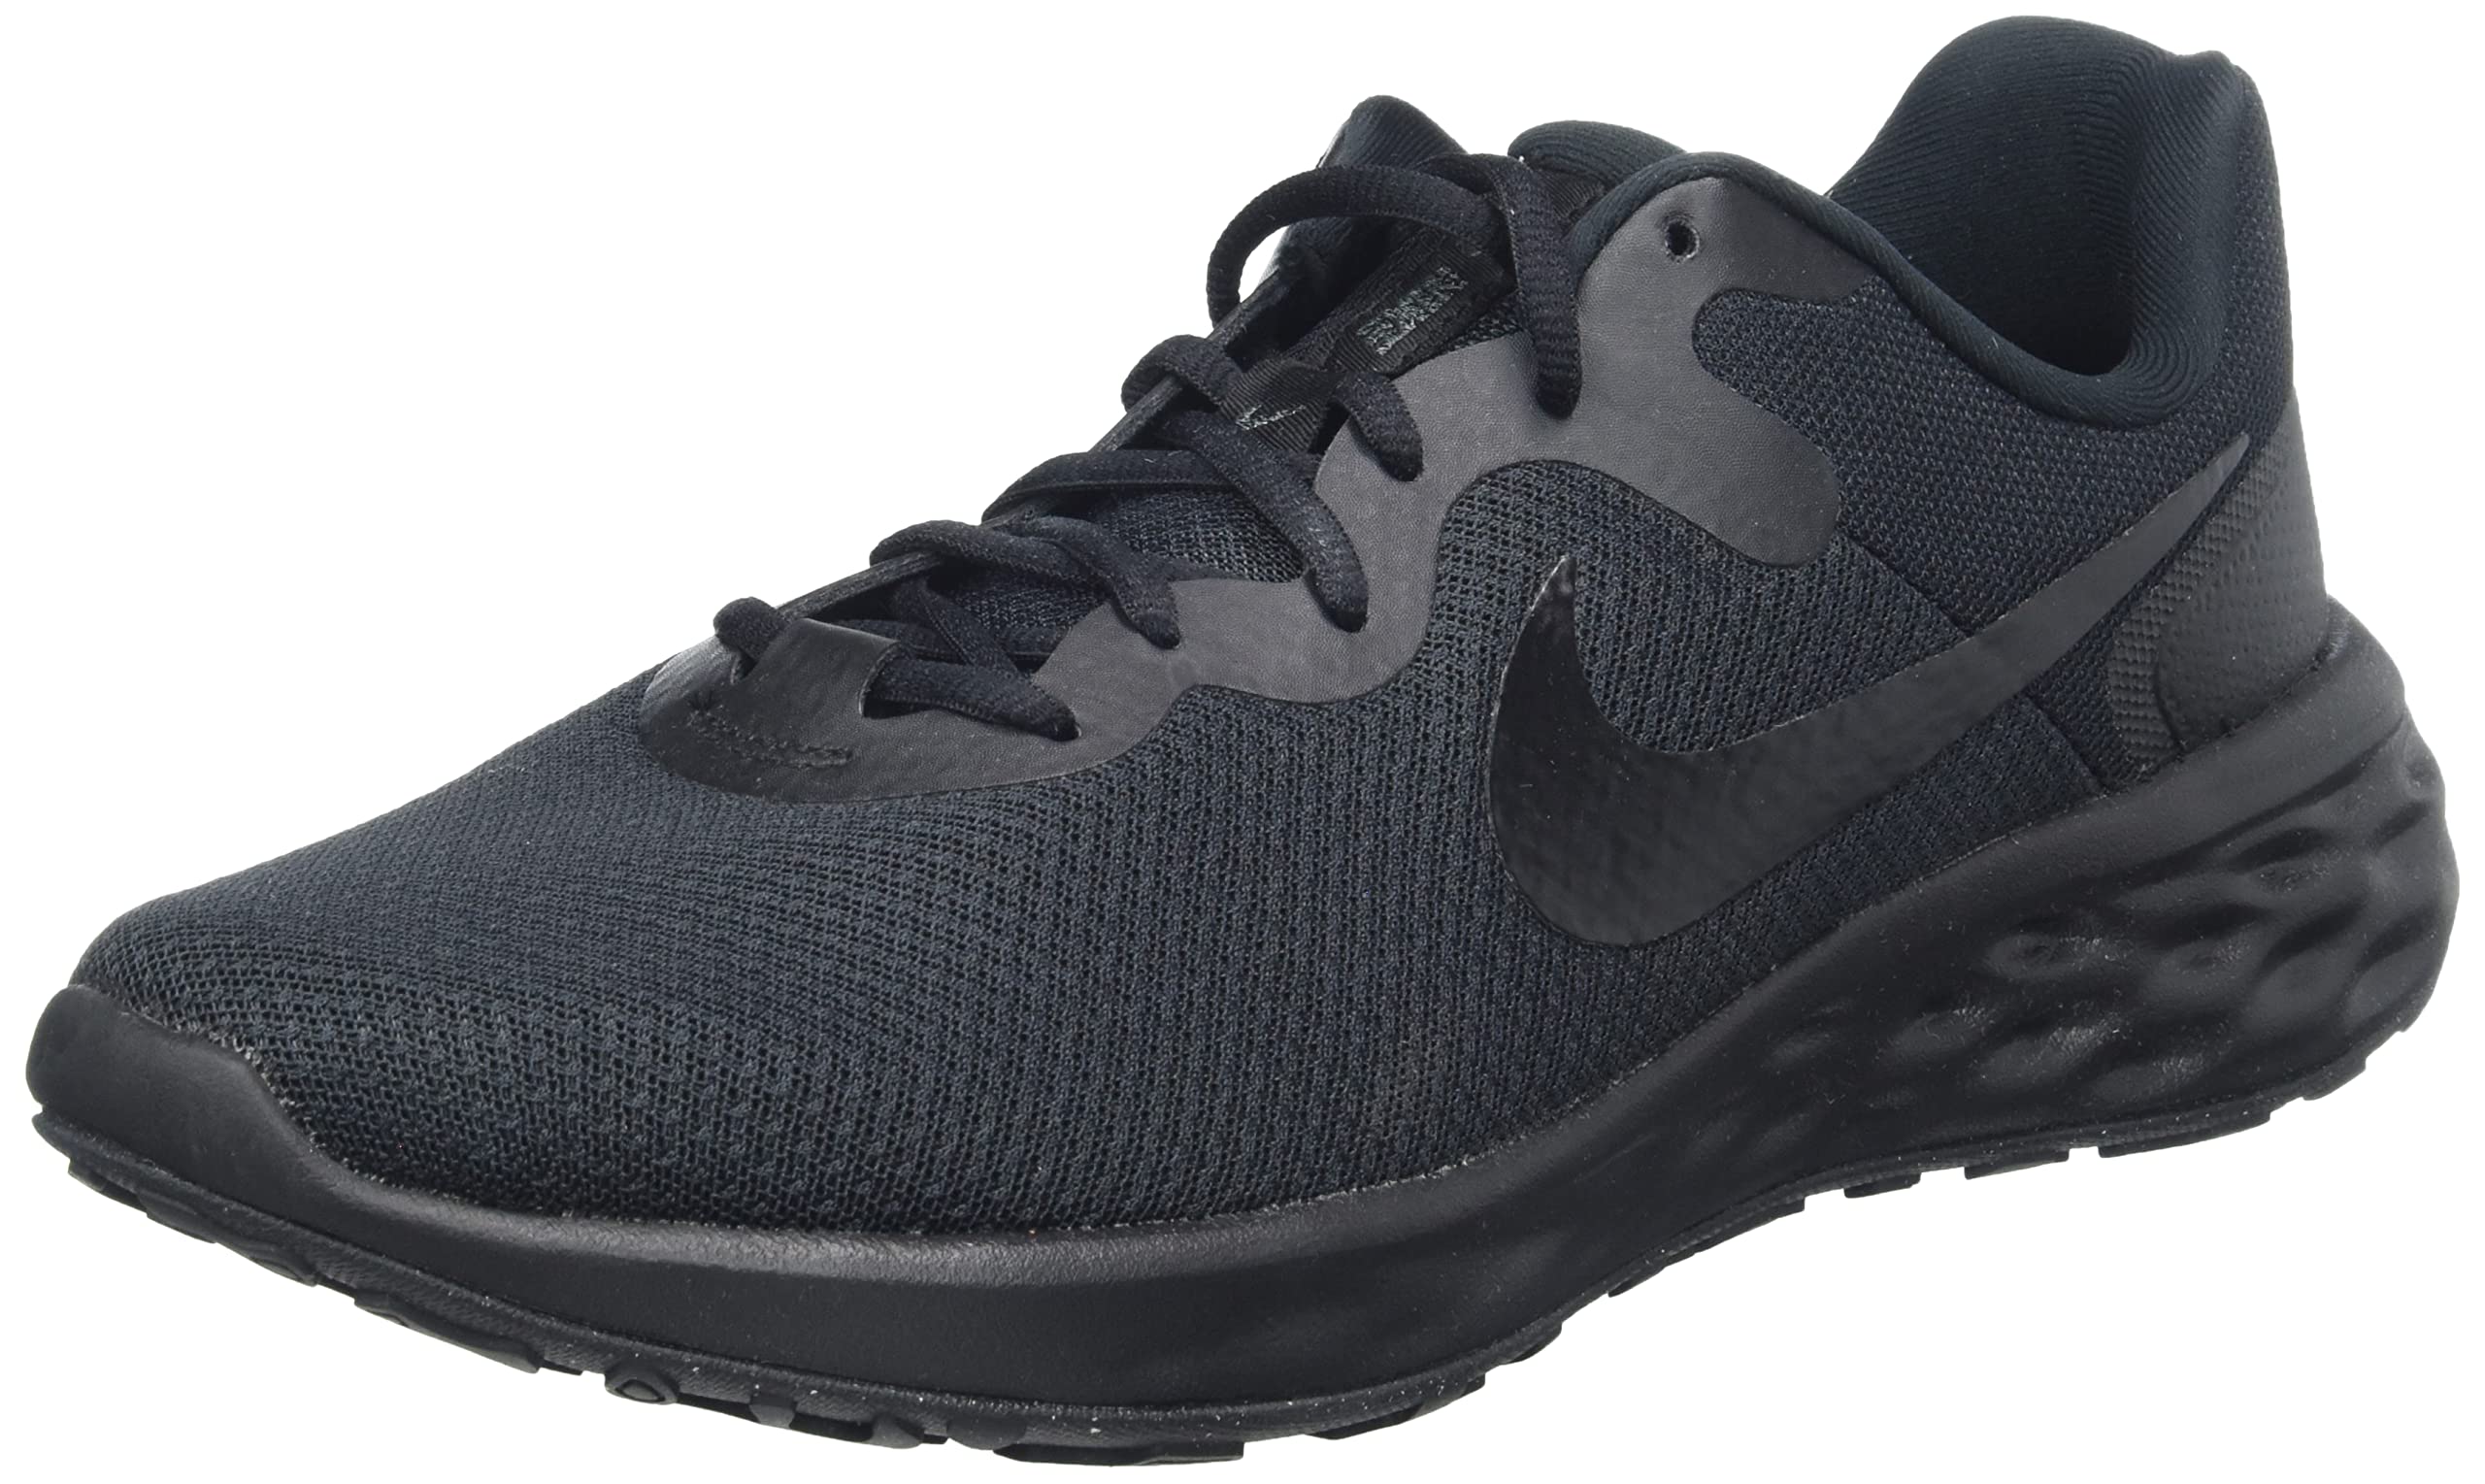 Nike Men's Training Running Shoe, Blue, EU